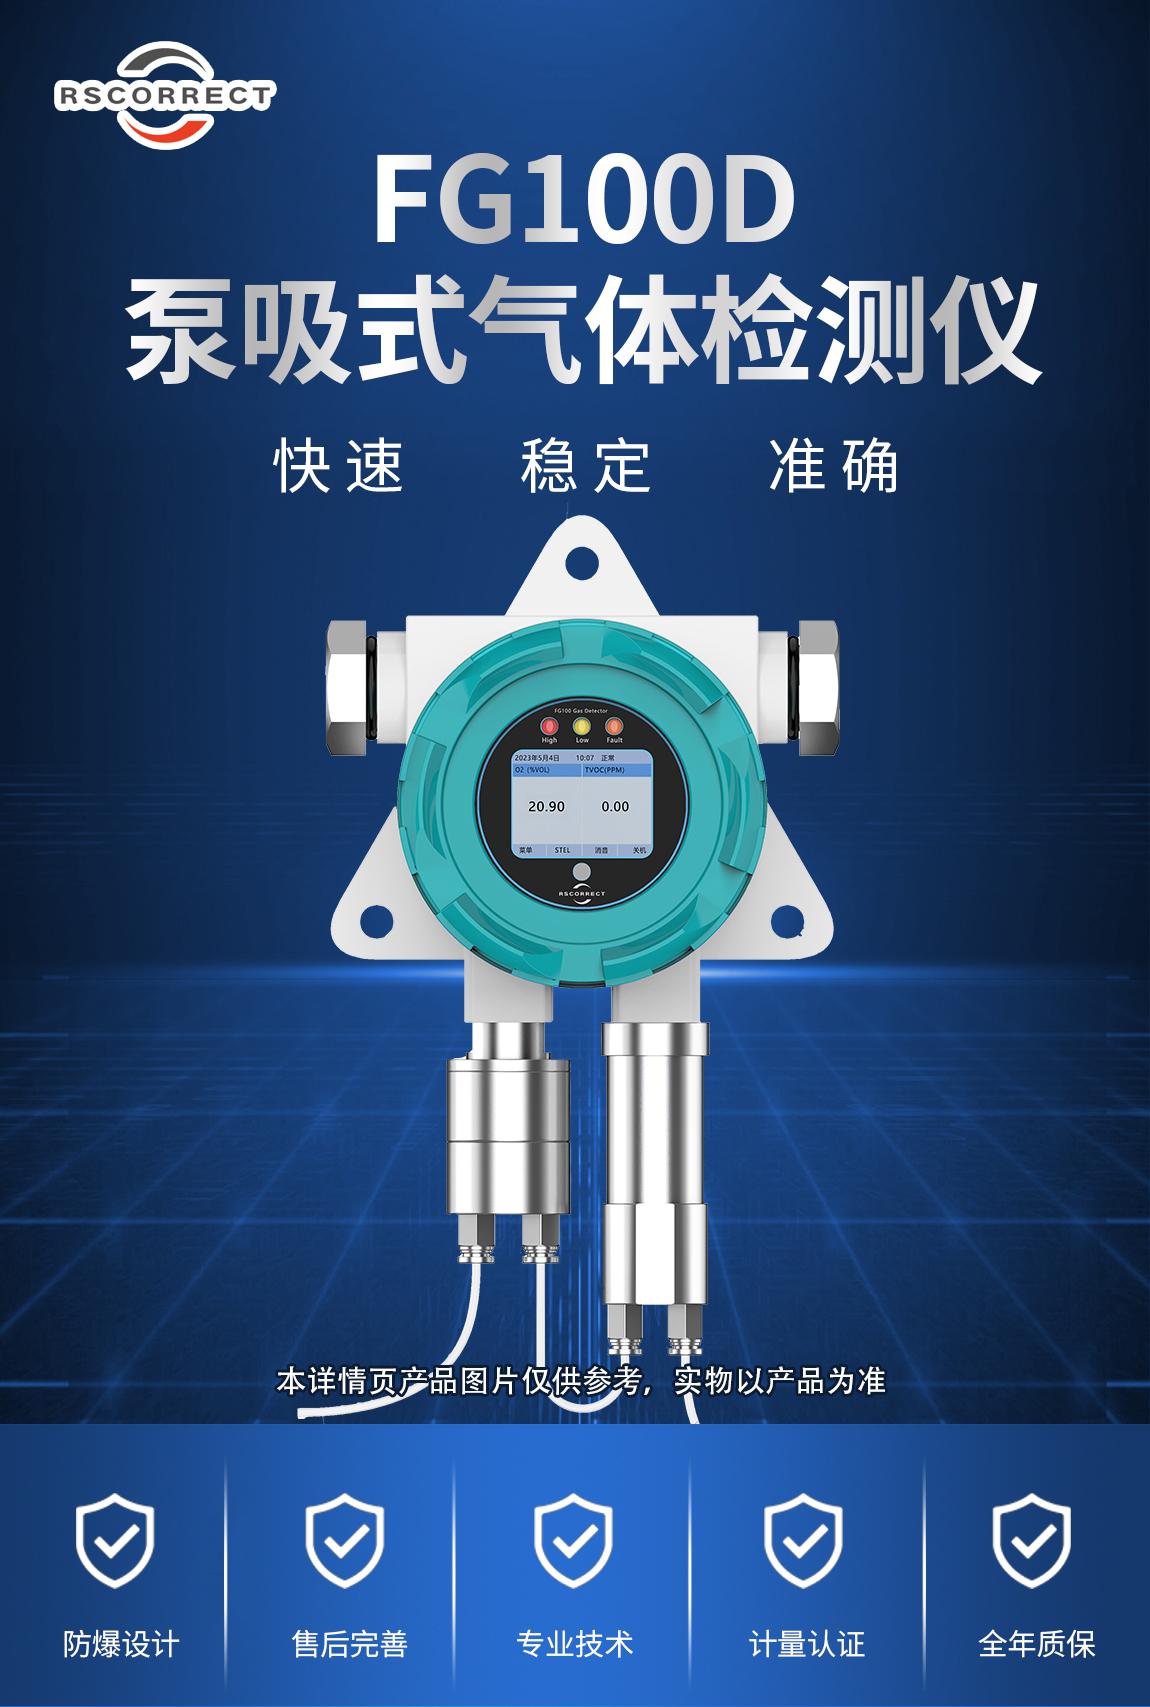 1-FG1000D泵吸式臭氧检测仪-产品介绍.jpg